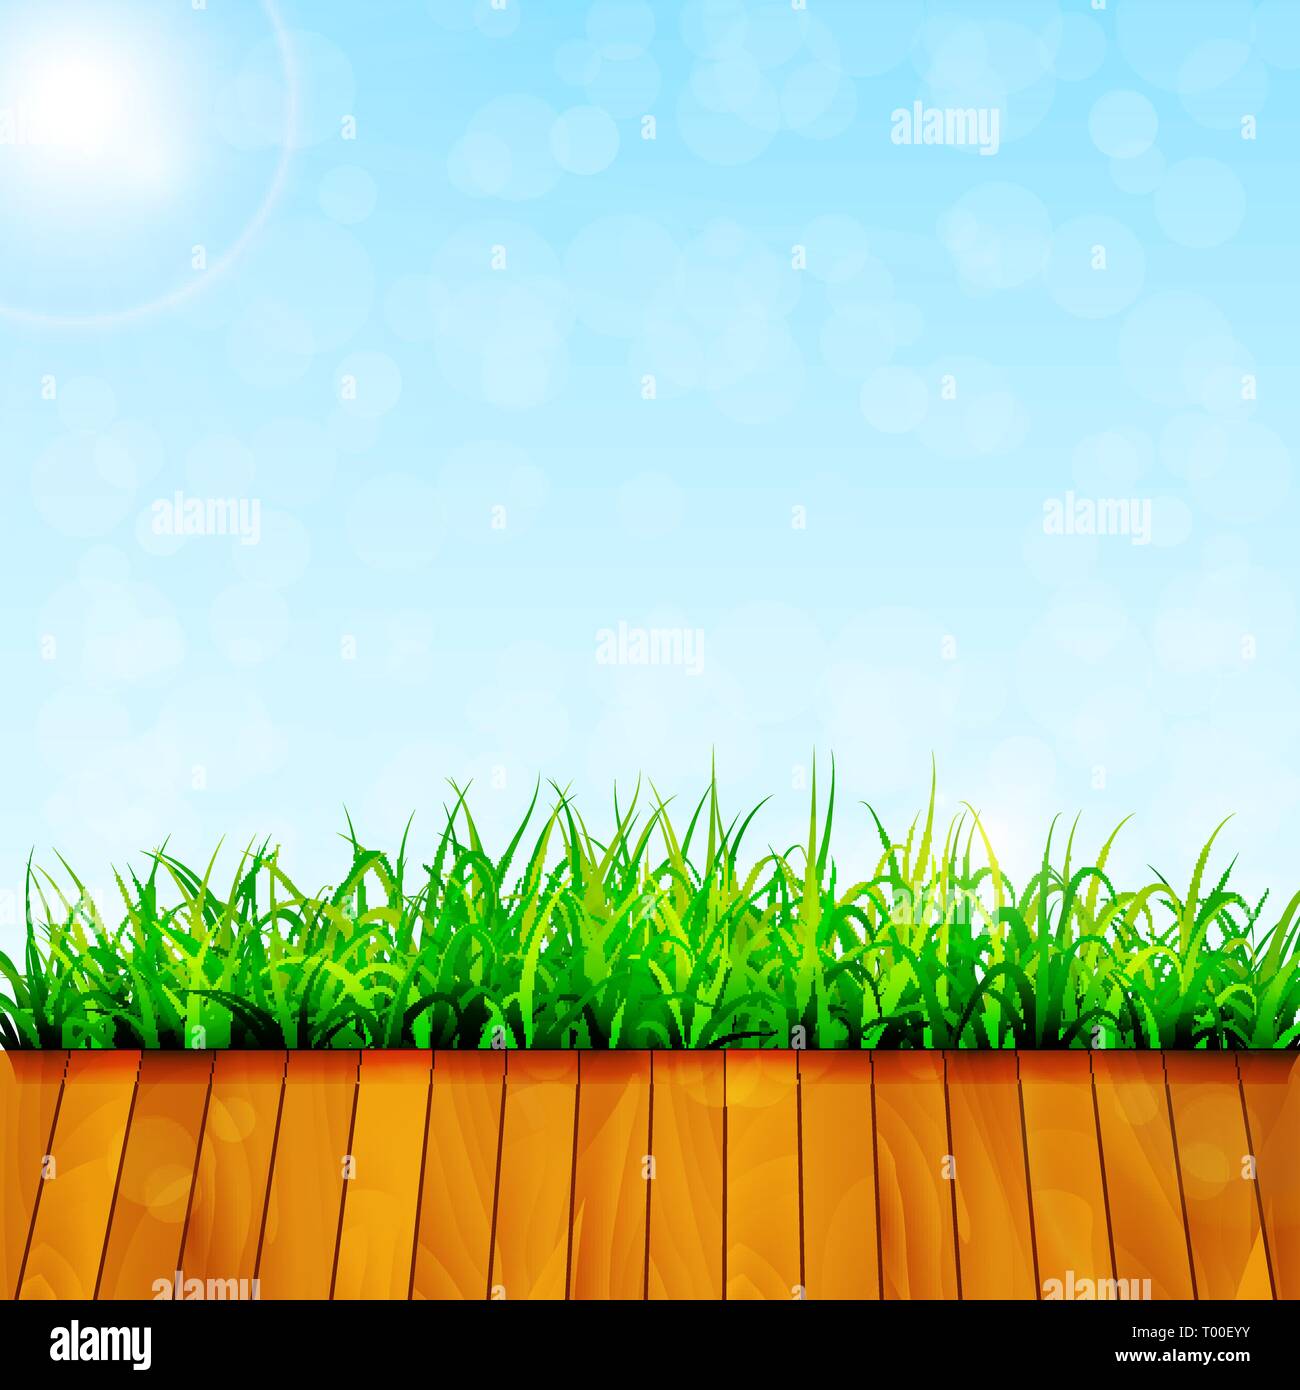 Green garden background vector Stock Vector Image & Art - Alamy